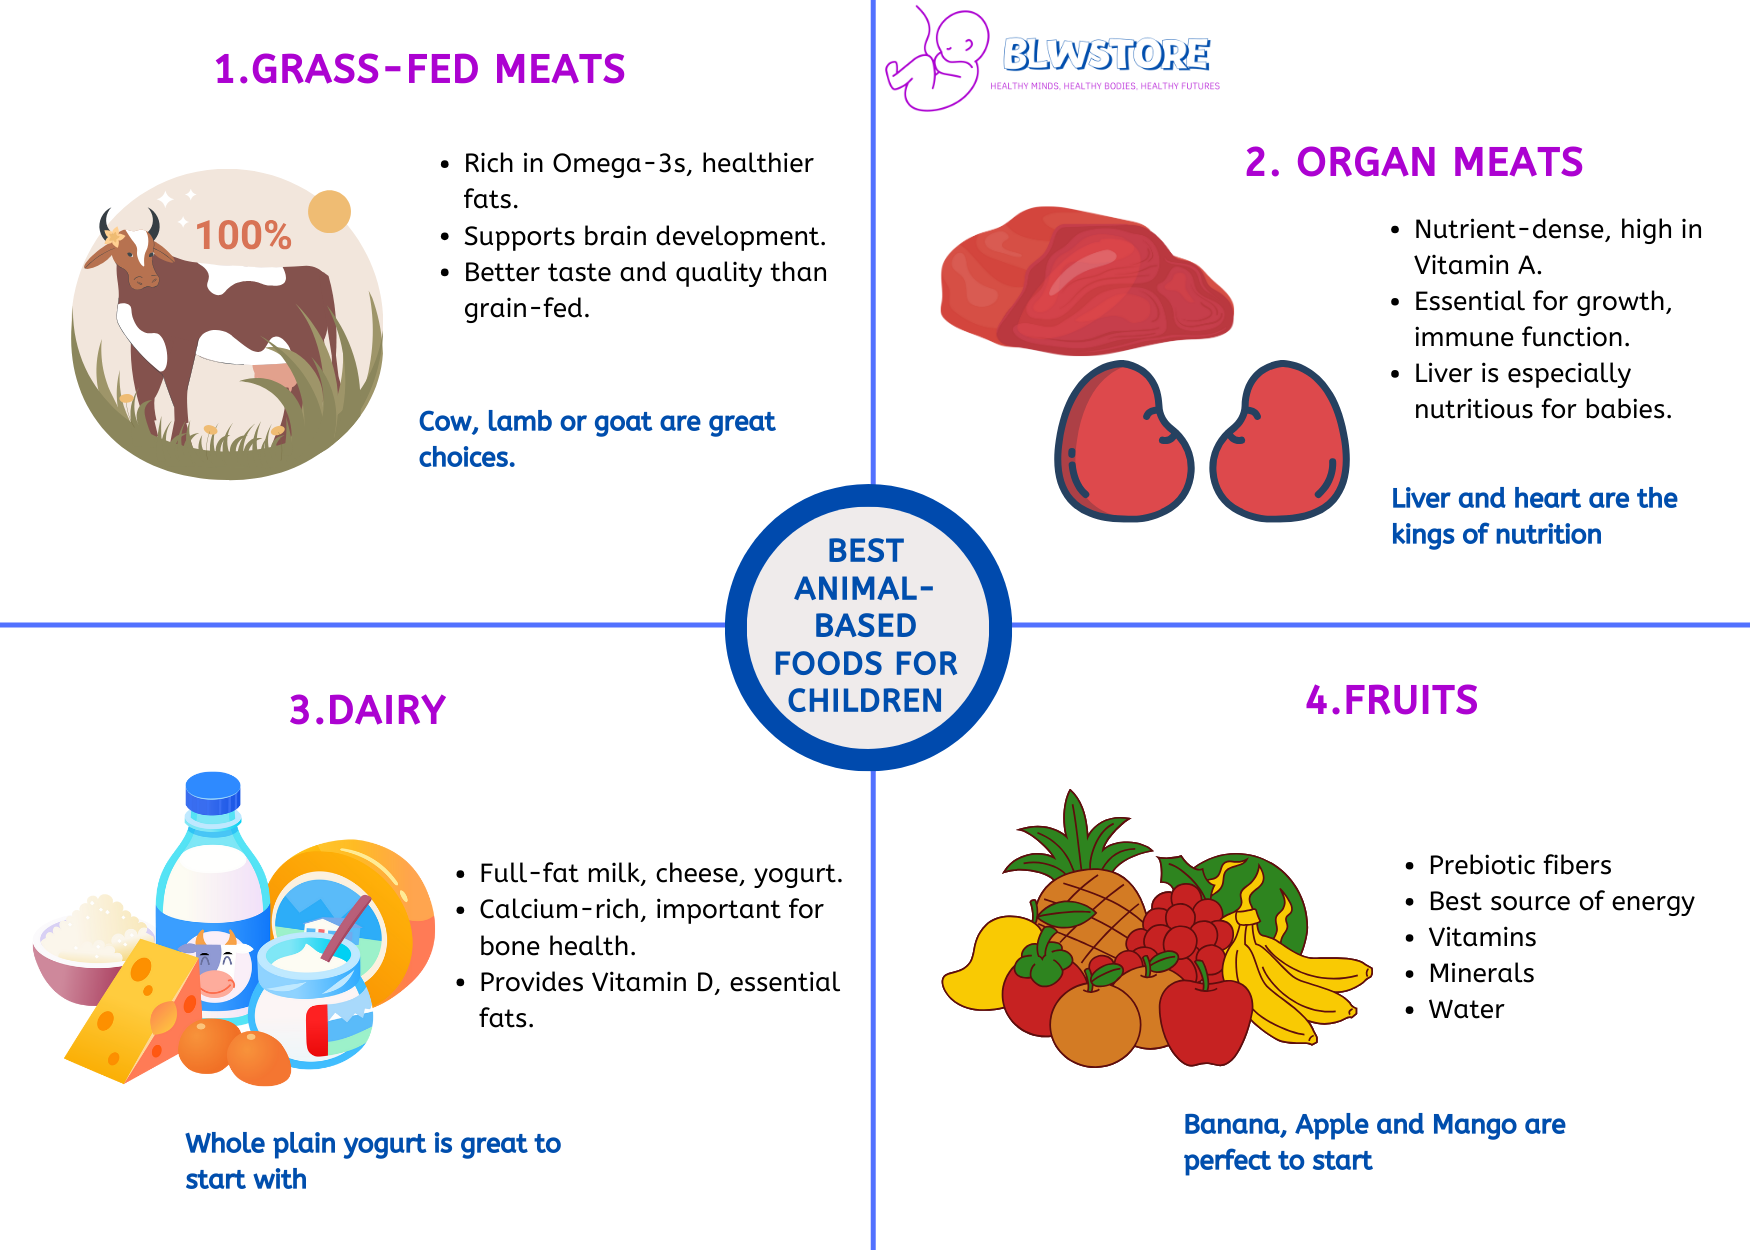 Best Animal-Based Foods for Children